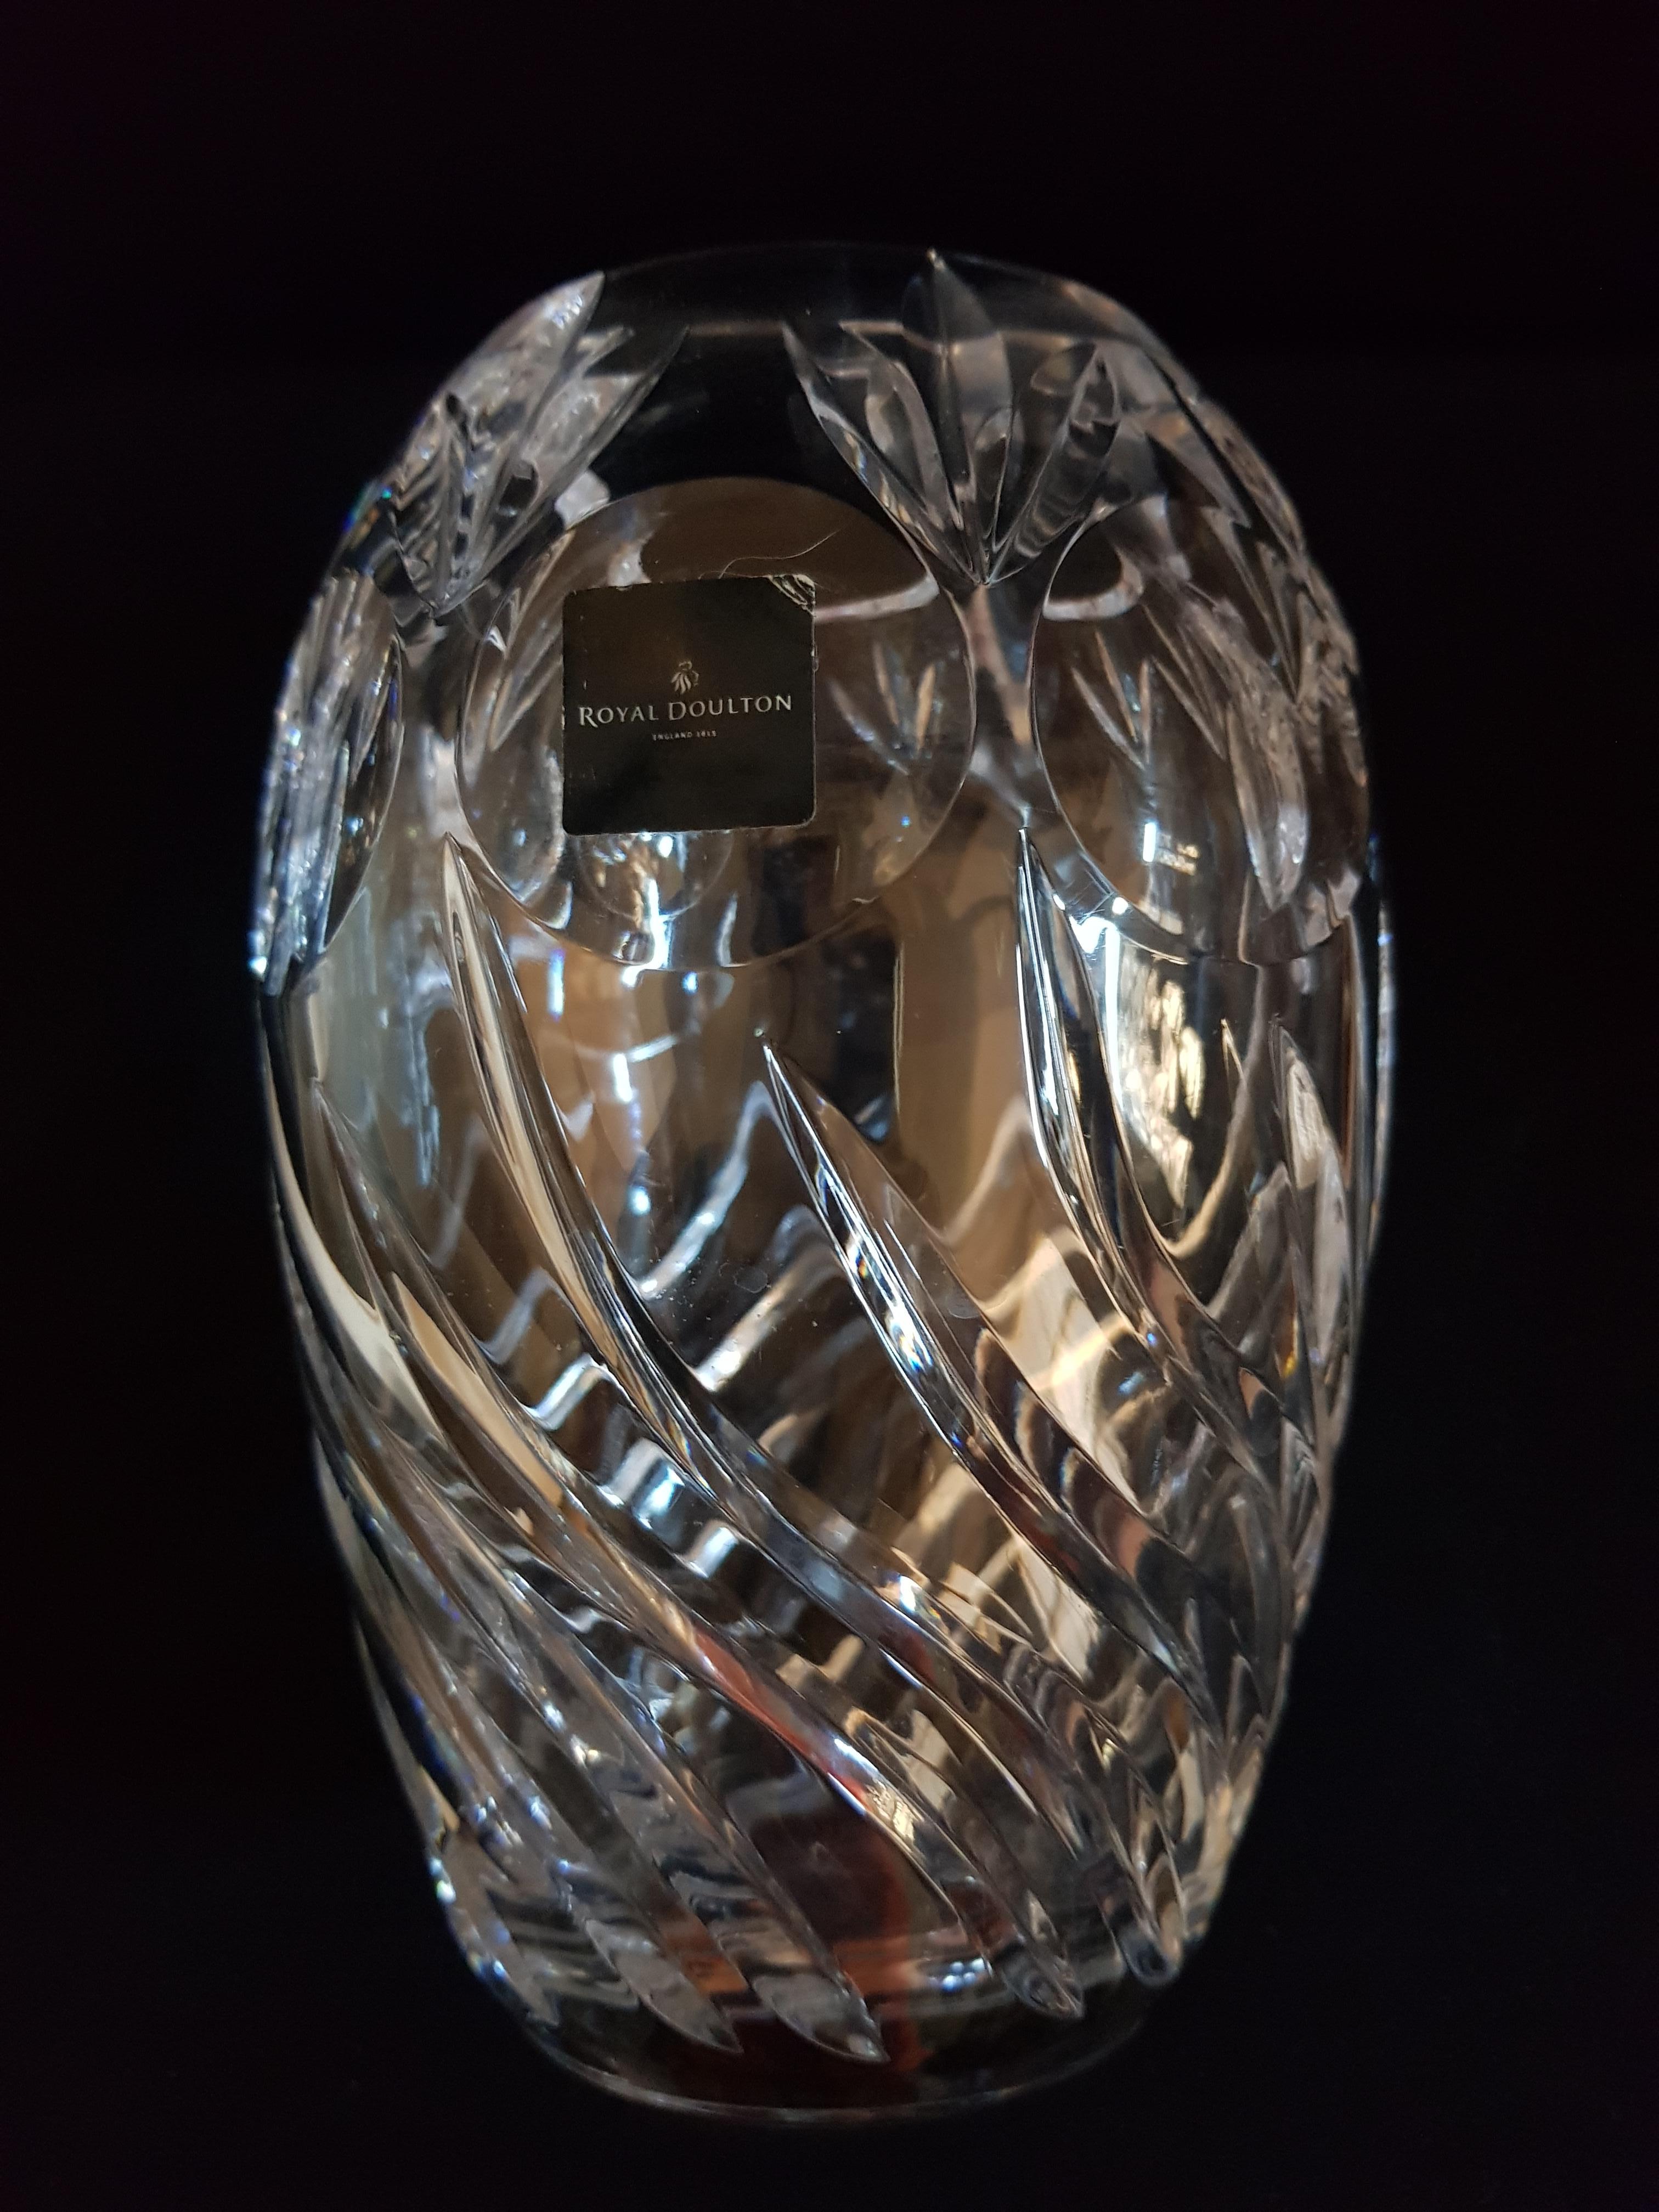 Art Deco Vitange Royal Doulton Crystal Vase For Sale